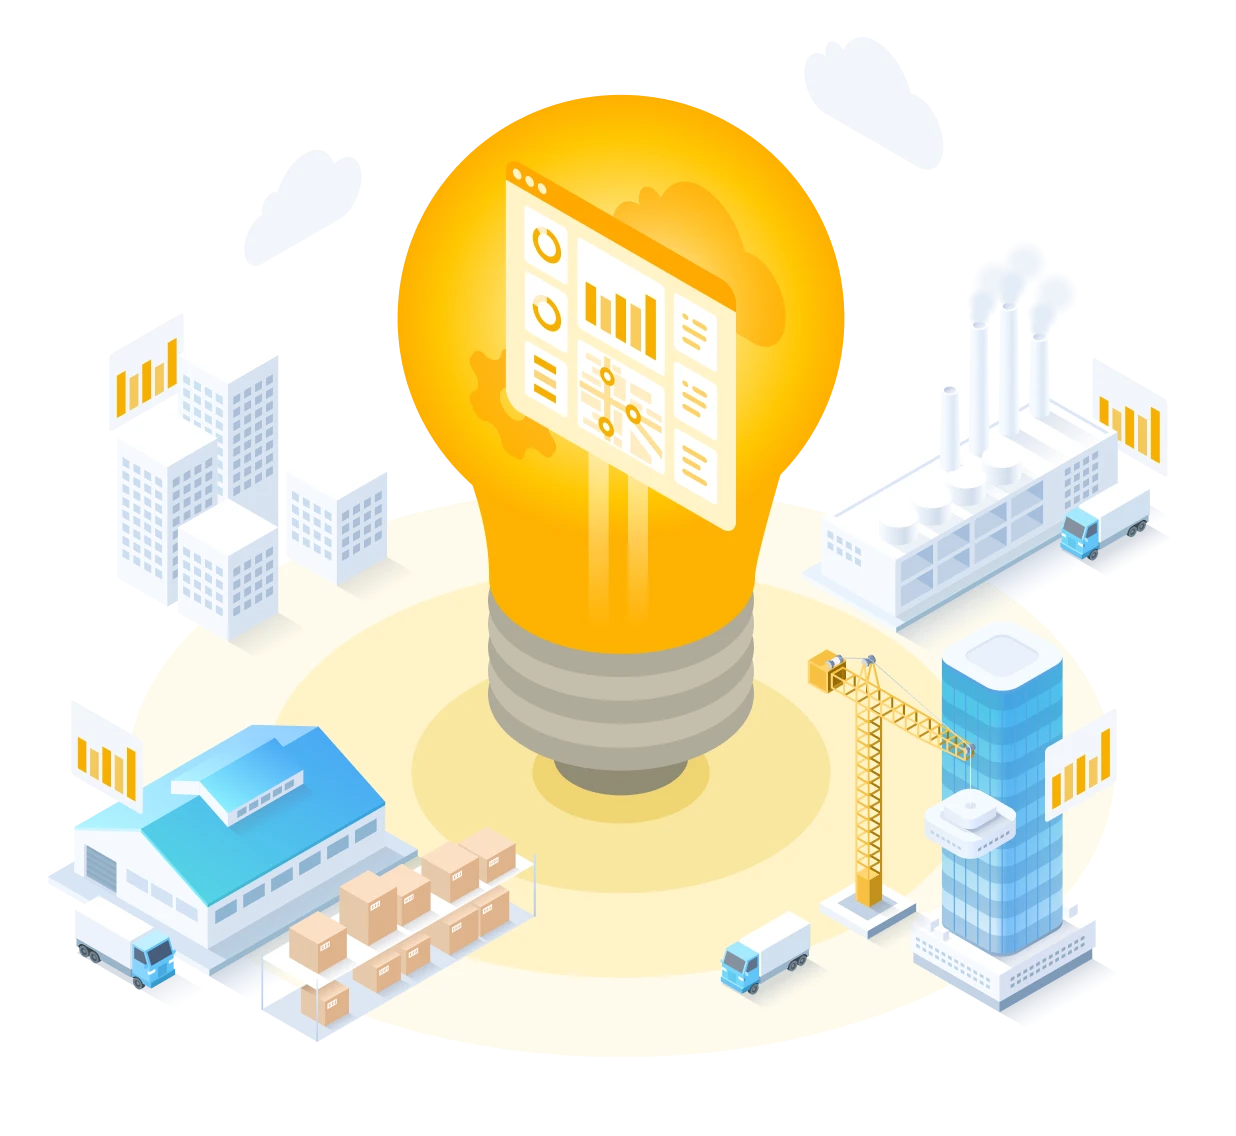 Innovation service illustration